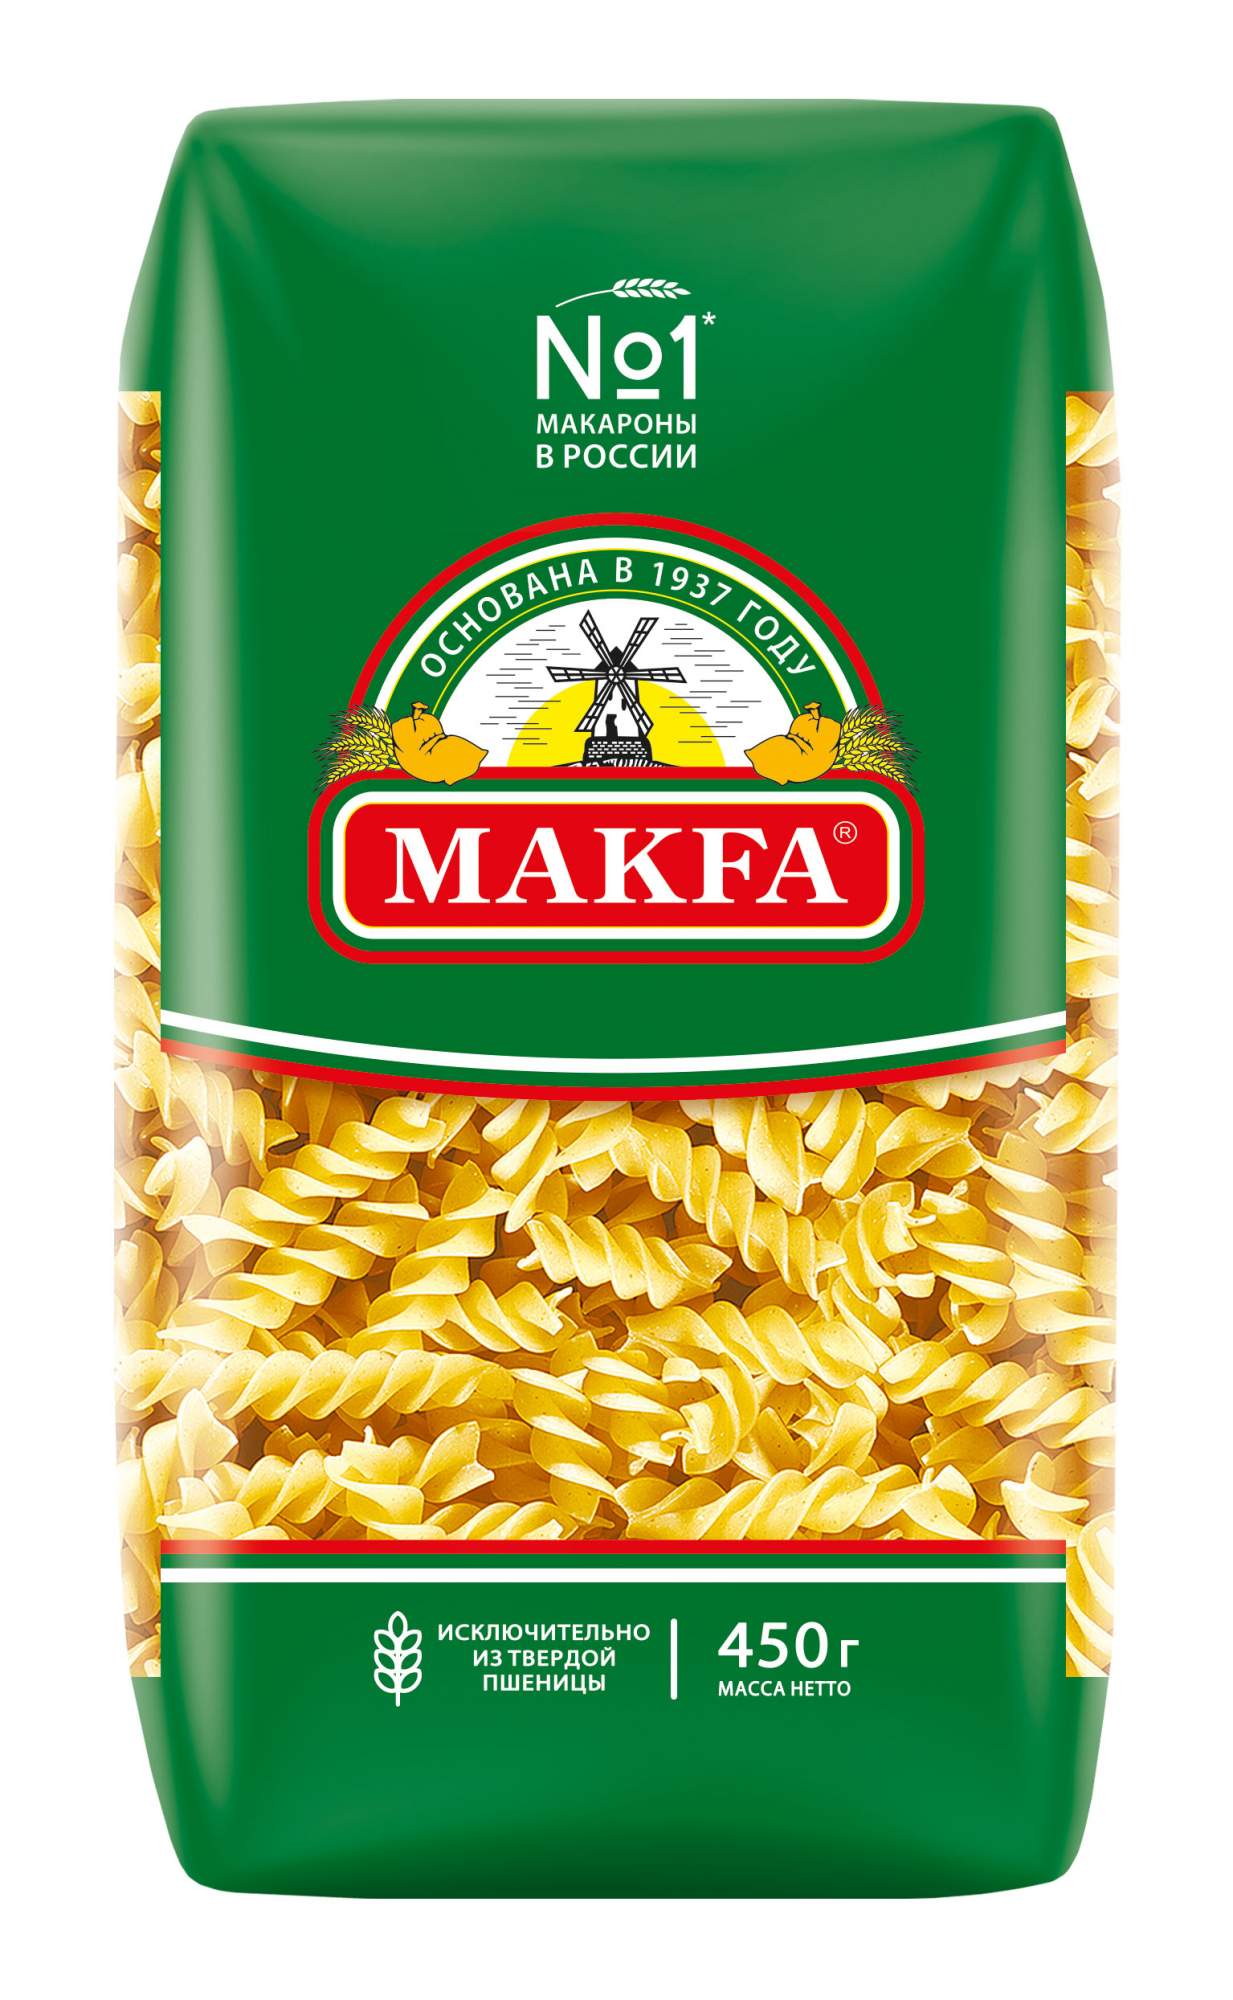 Макаронные изделия Makfa Спирали 450 г - купить в Мегамаркет Екб, цена на Мегамаркет